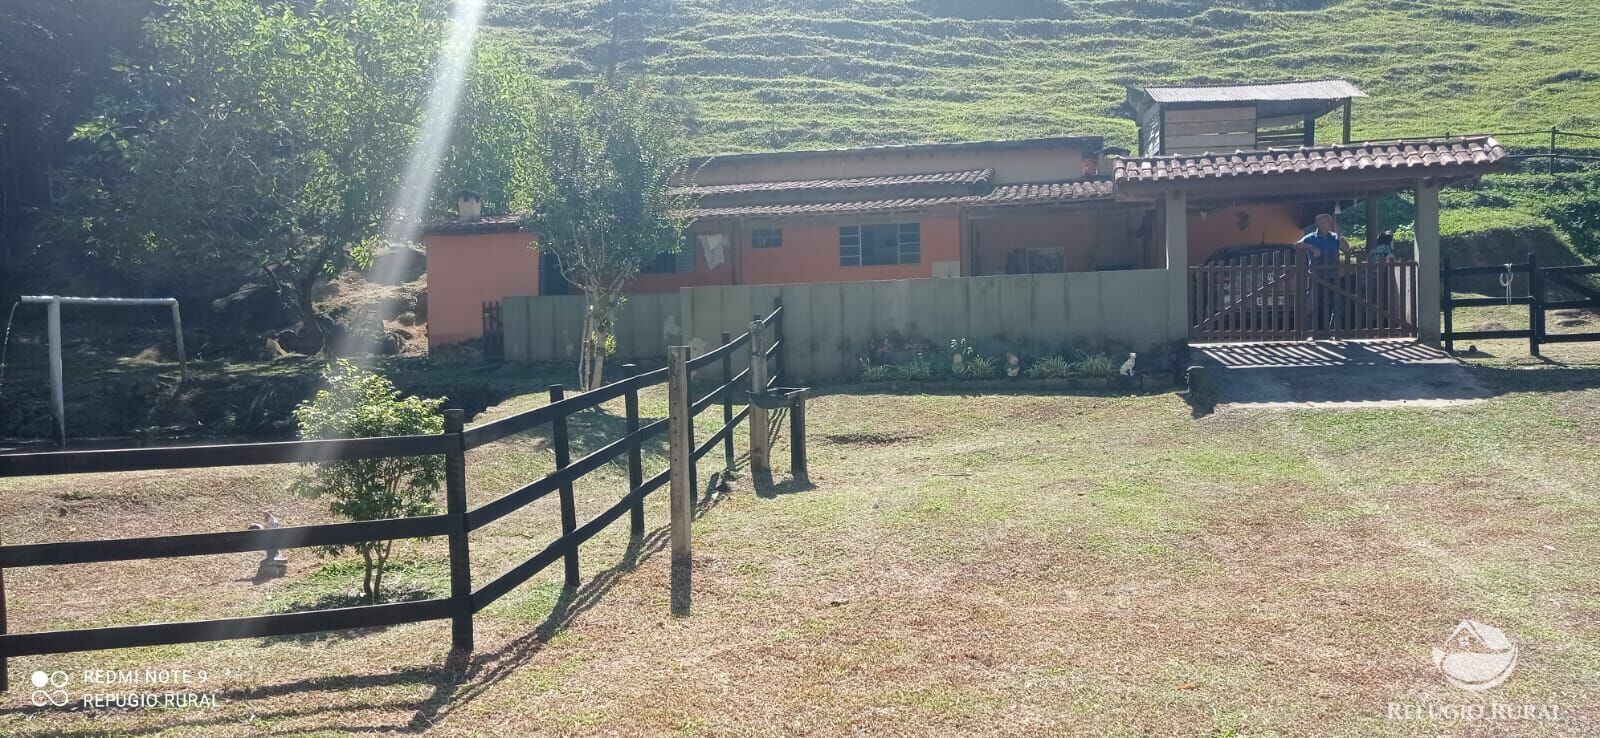 Sítio de 9 ha em São José dos Campos, SP